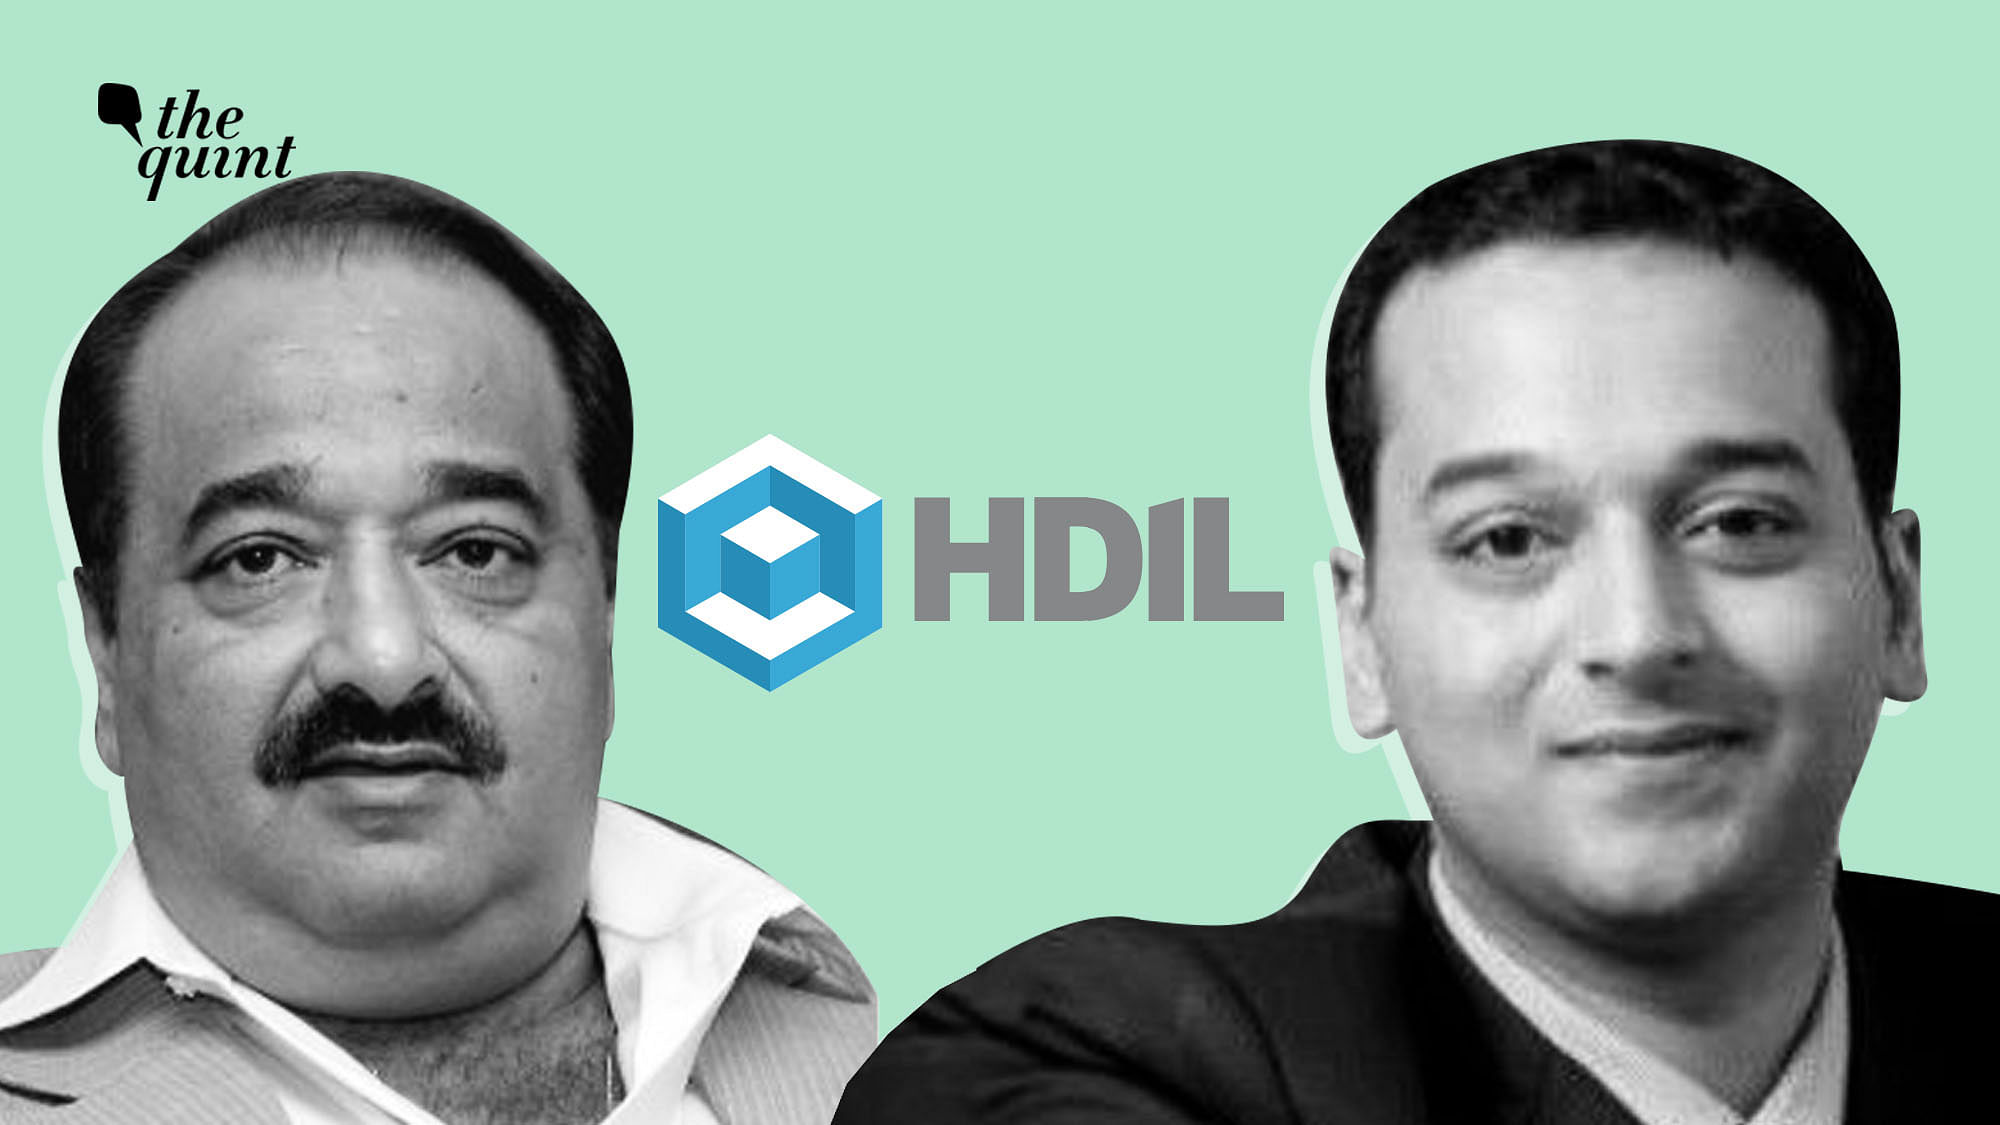 HDIL Directors Rakesh (left) and Sarang Wadhawan (right).